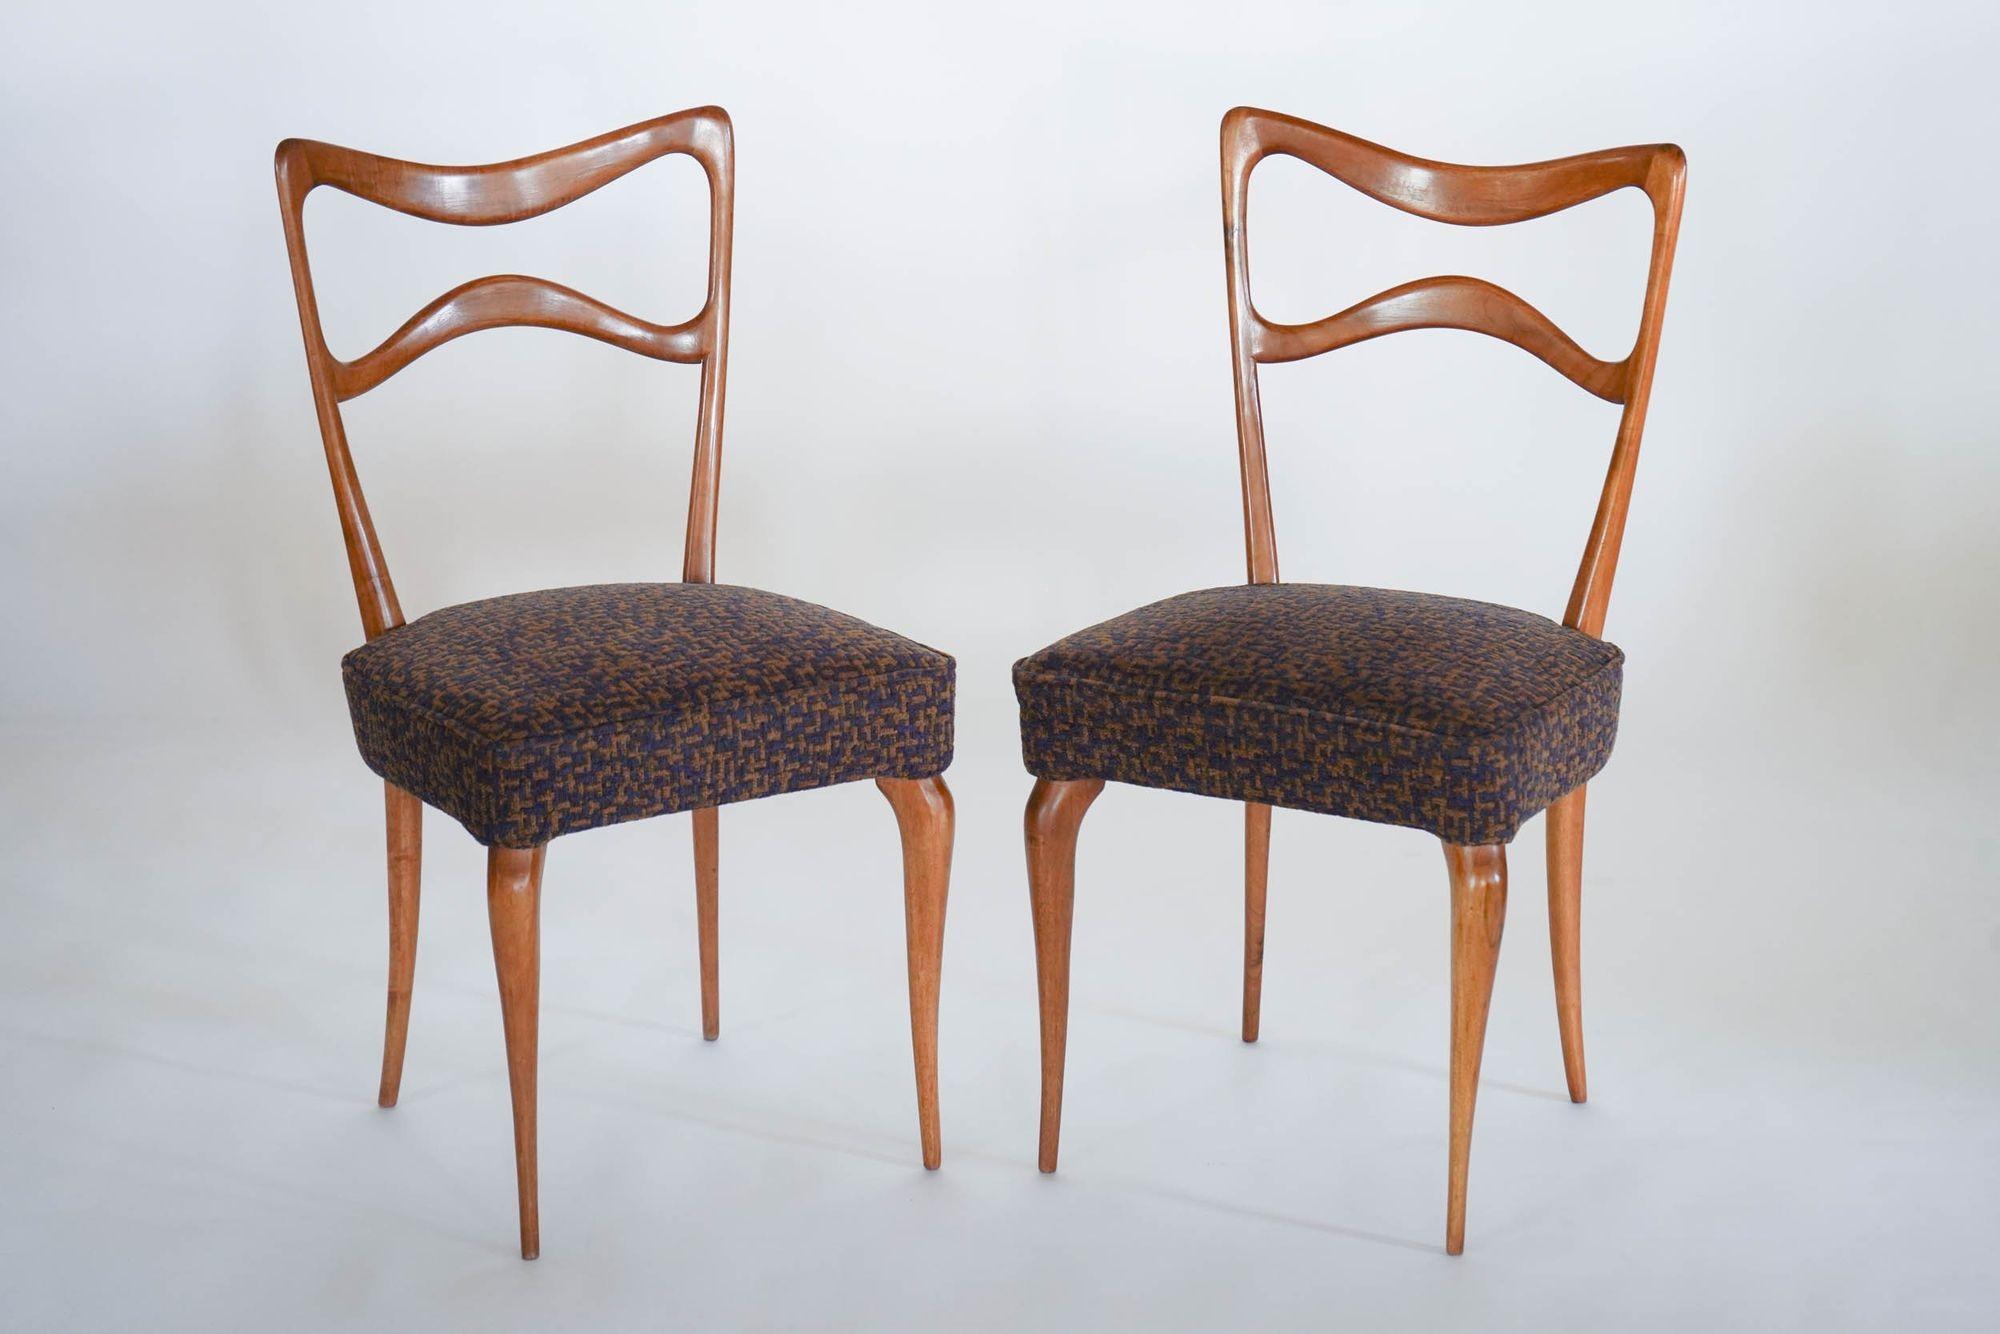 Voici la chaise Armonia.

Cet ensemble de 8 chaises en noyer italien est un ensemble de chaises de salle à manger unique et intemporel.
Les chaises sont fabriquées en bois de noyer massif italien, connu pour sa solidité et sa beauté. Les chaises ont